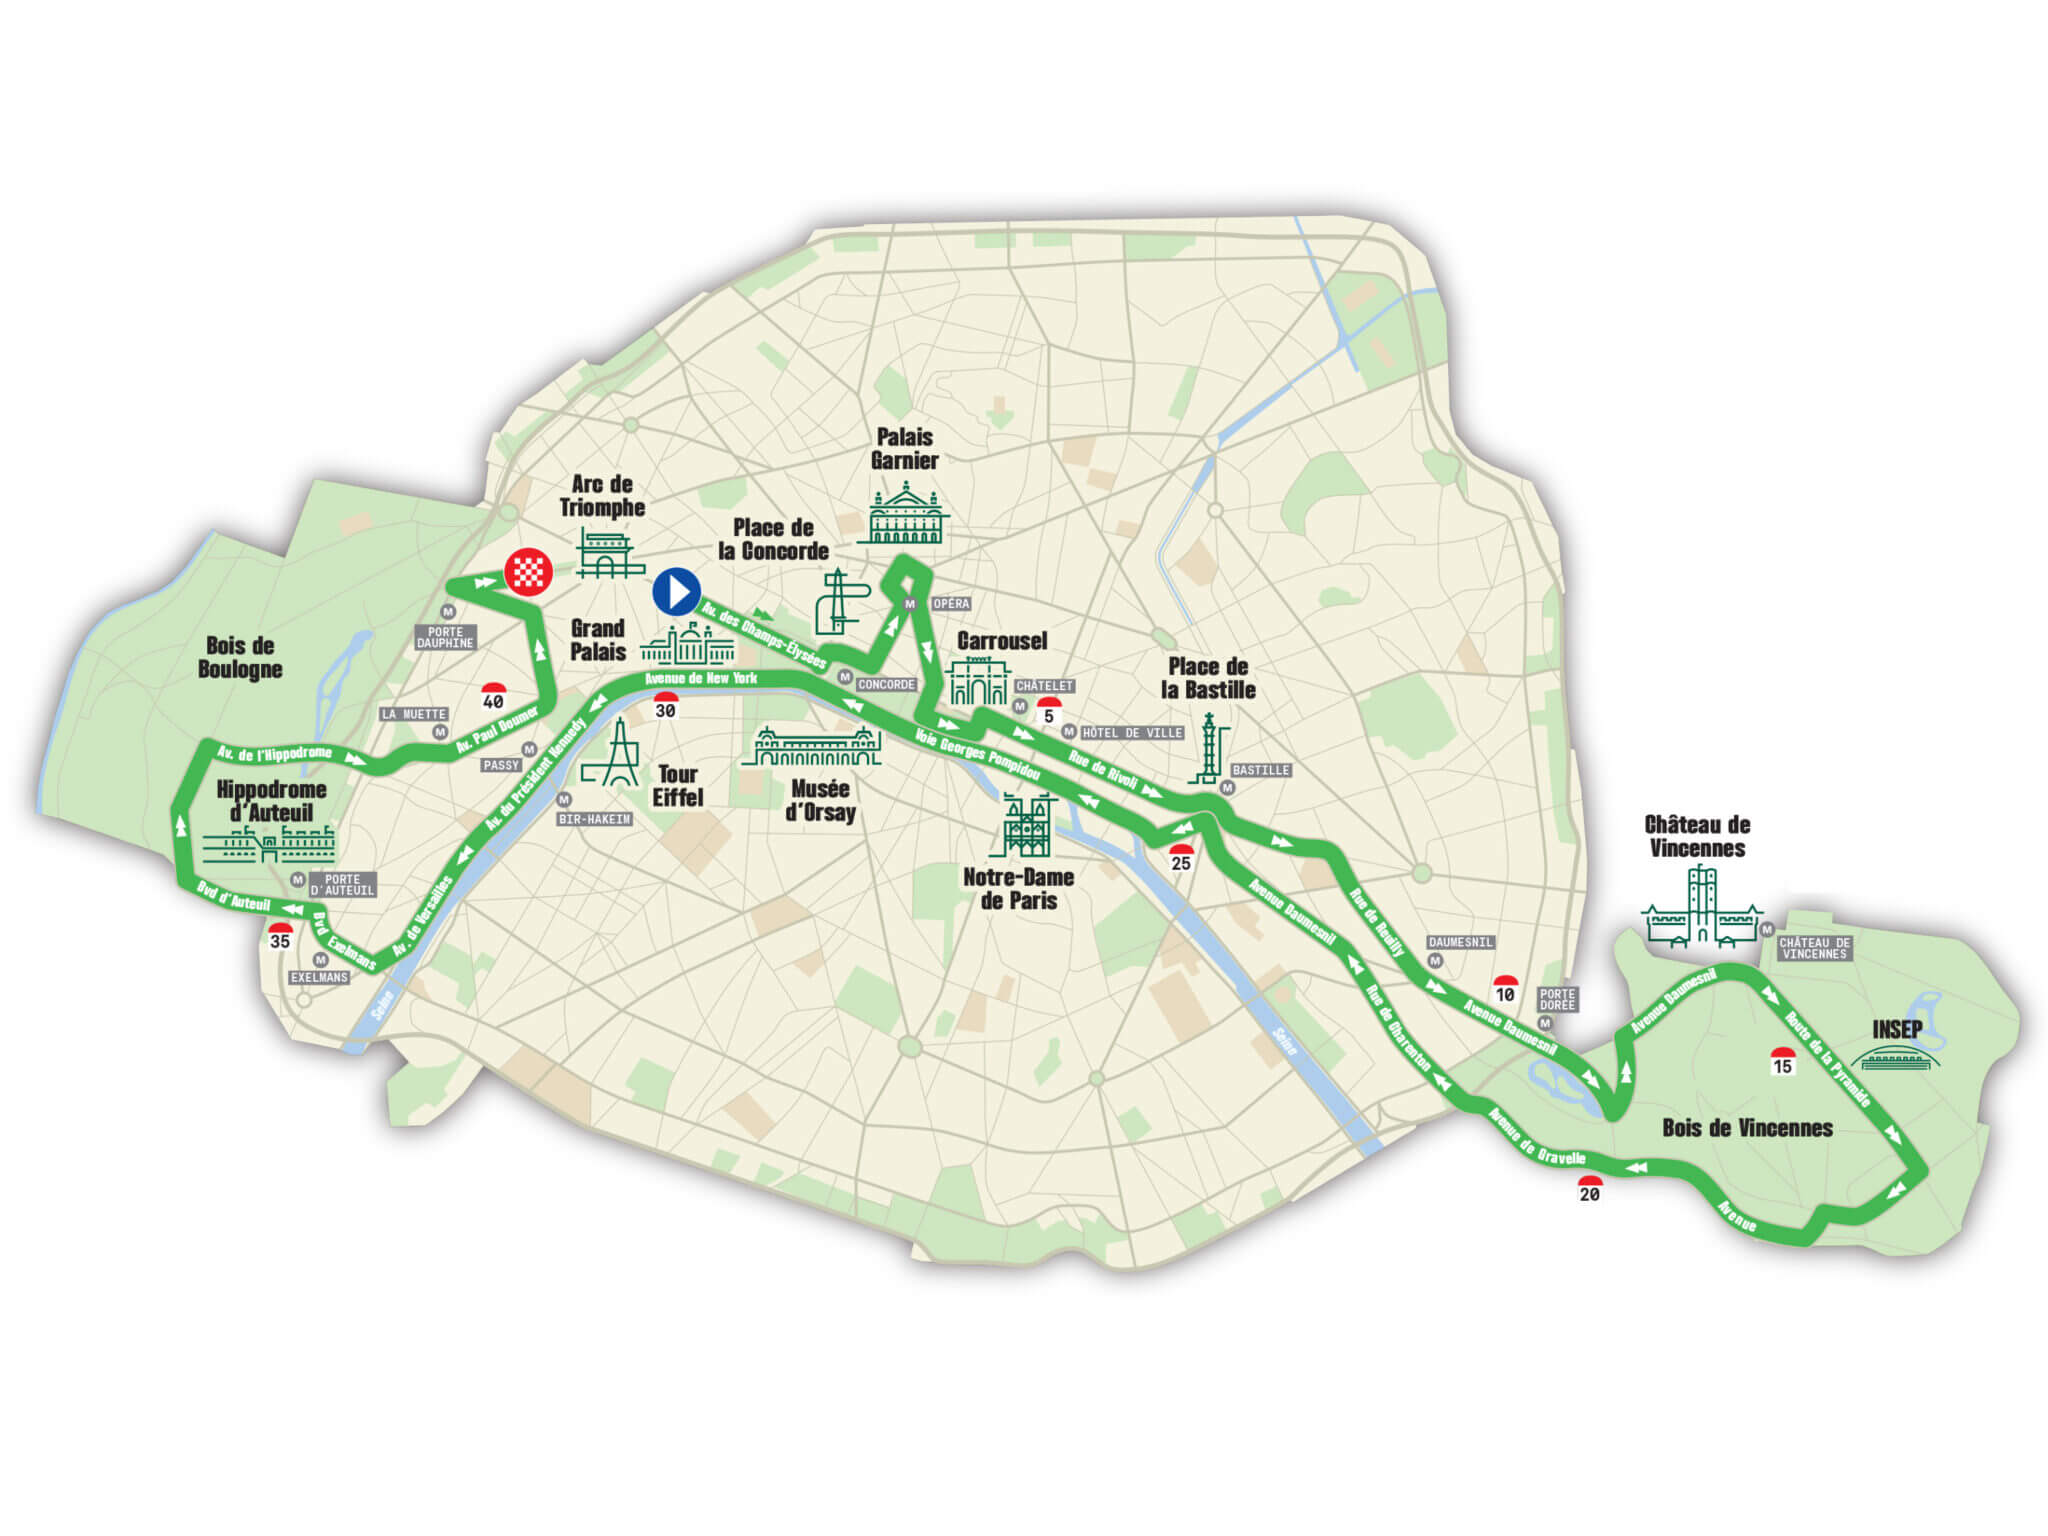 Le parcours du marathon de Paris 2024 étudié km par km - Trail & Running